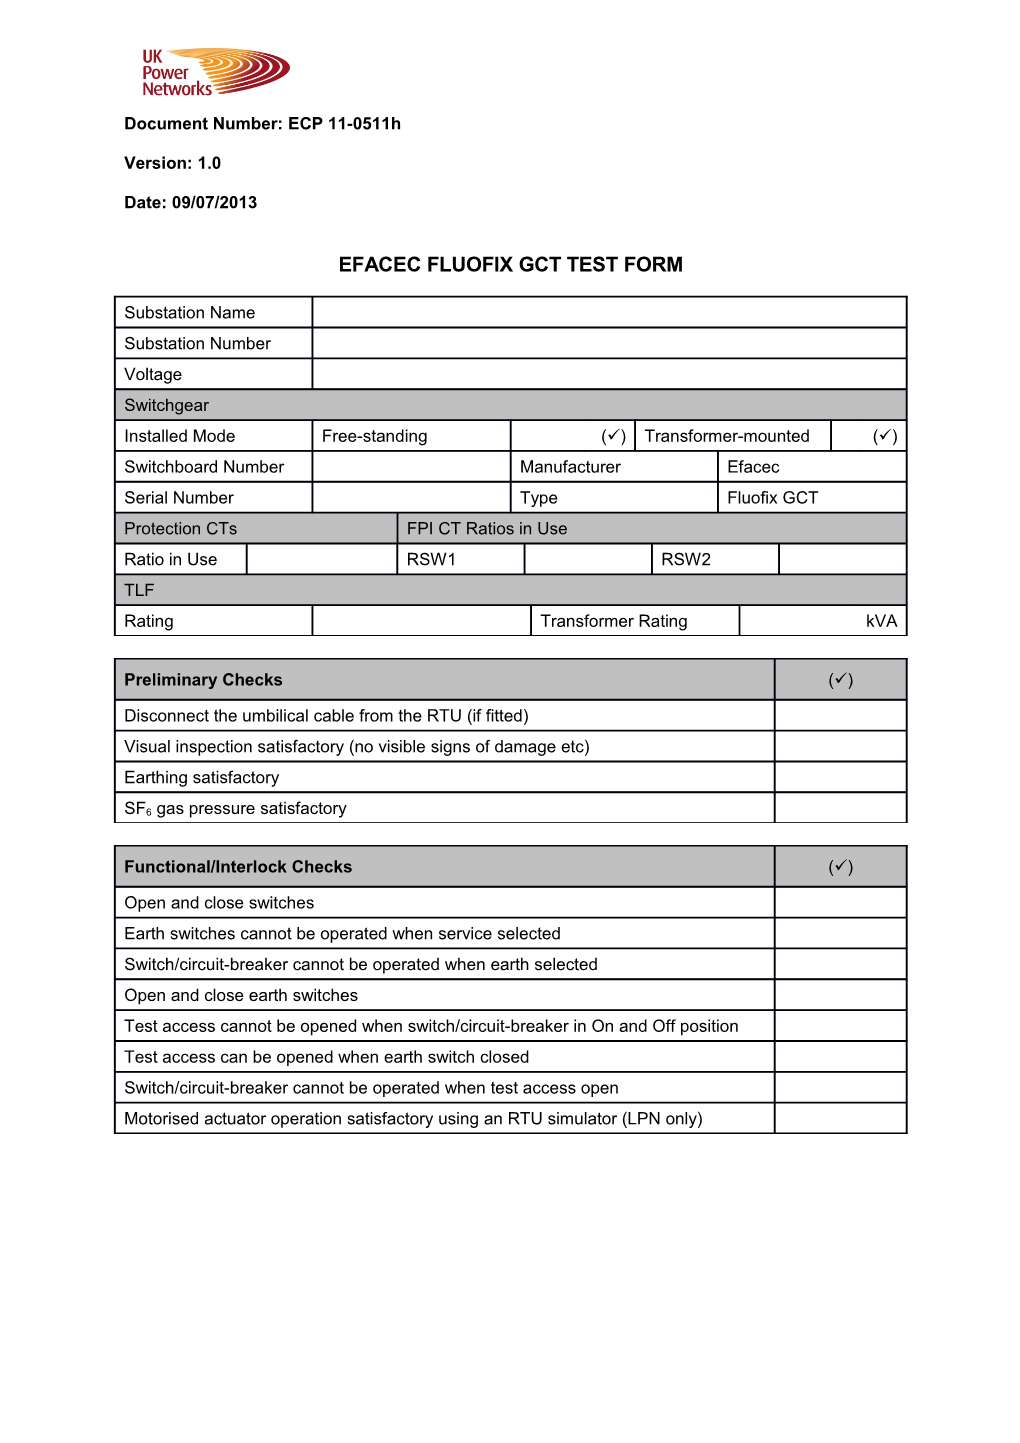 ECP 11-0511H Efacec Fluofix GCT Test Form